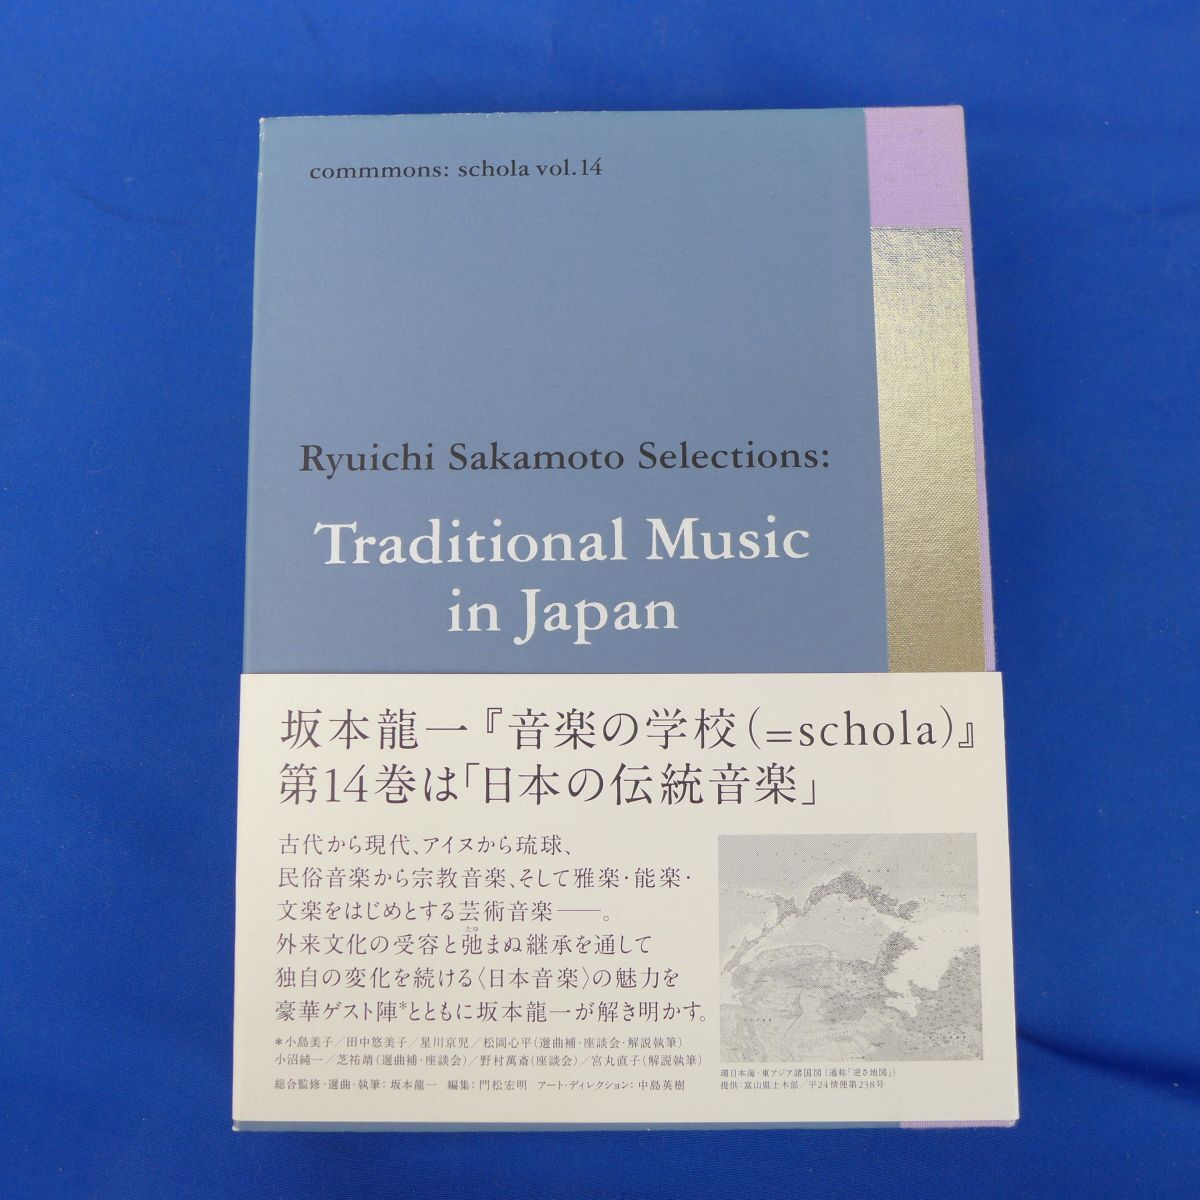 Yu S7048 ● [Продвижение] [CD] Commmons: Schola Vol.14 Ryuichi Sakamoto Выборы: традиционная музыка в Японии